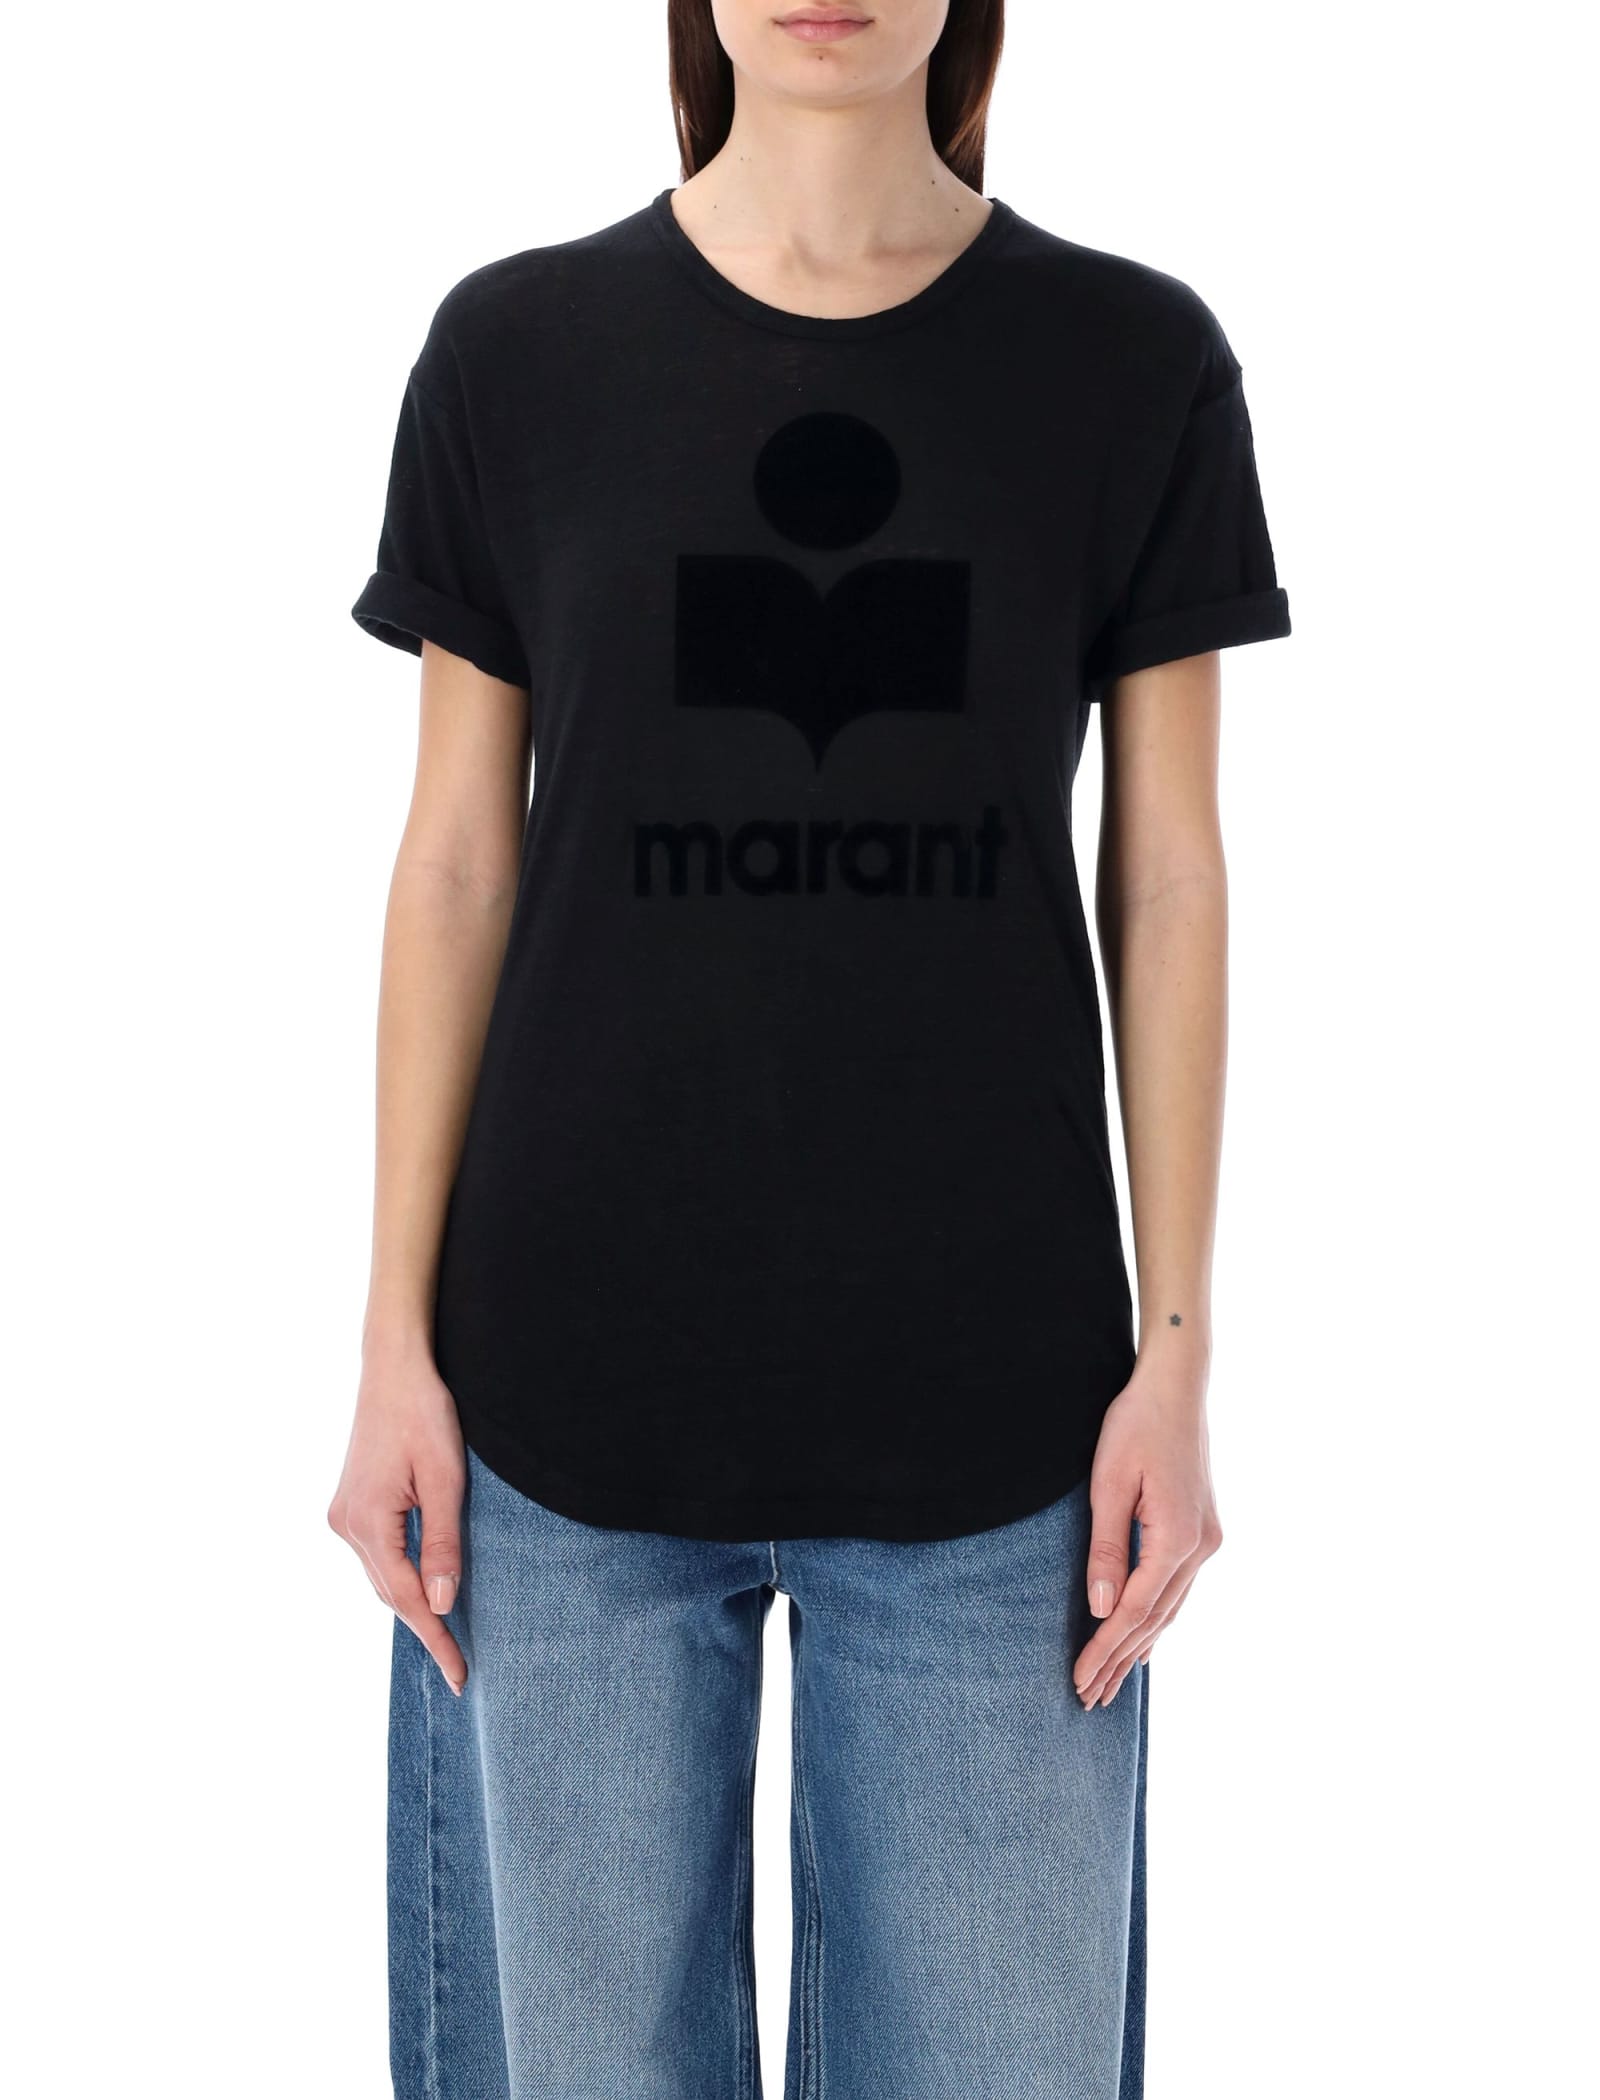 Marant Etoile Koldi T-shirt In Black